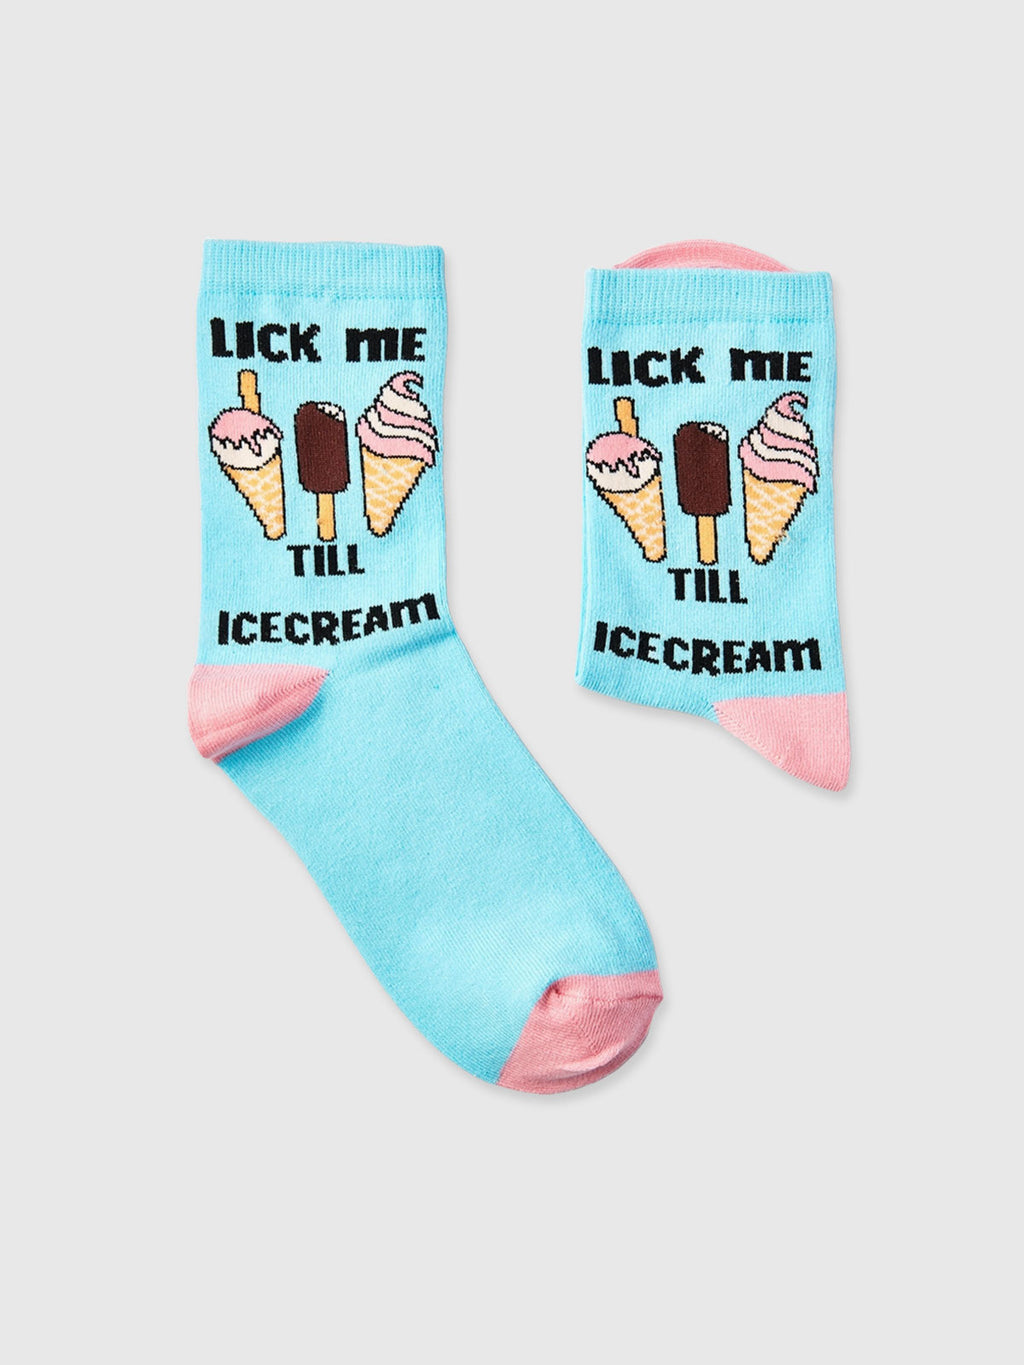 Lick Me Till Ice Cream Socks - Ladies